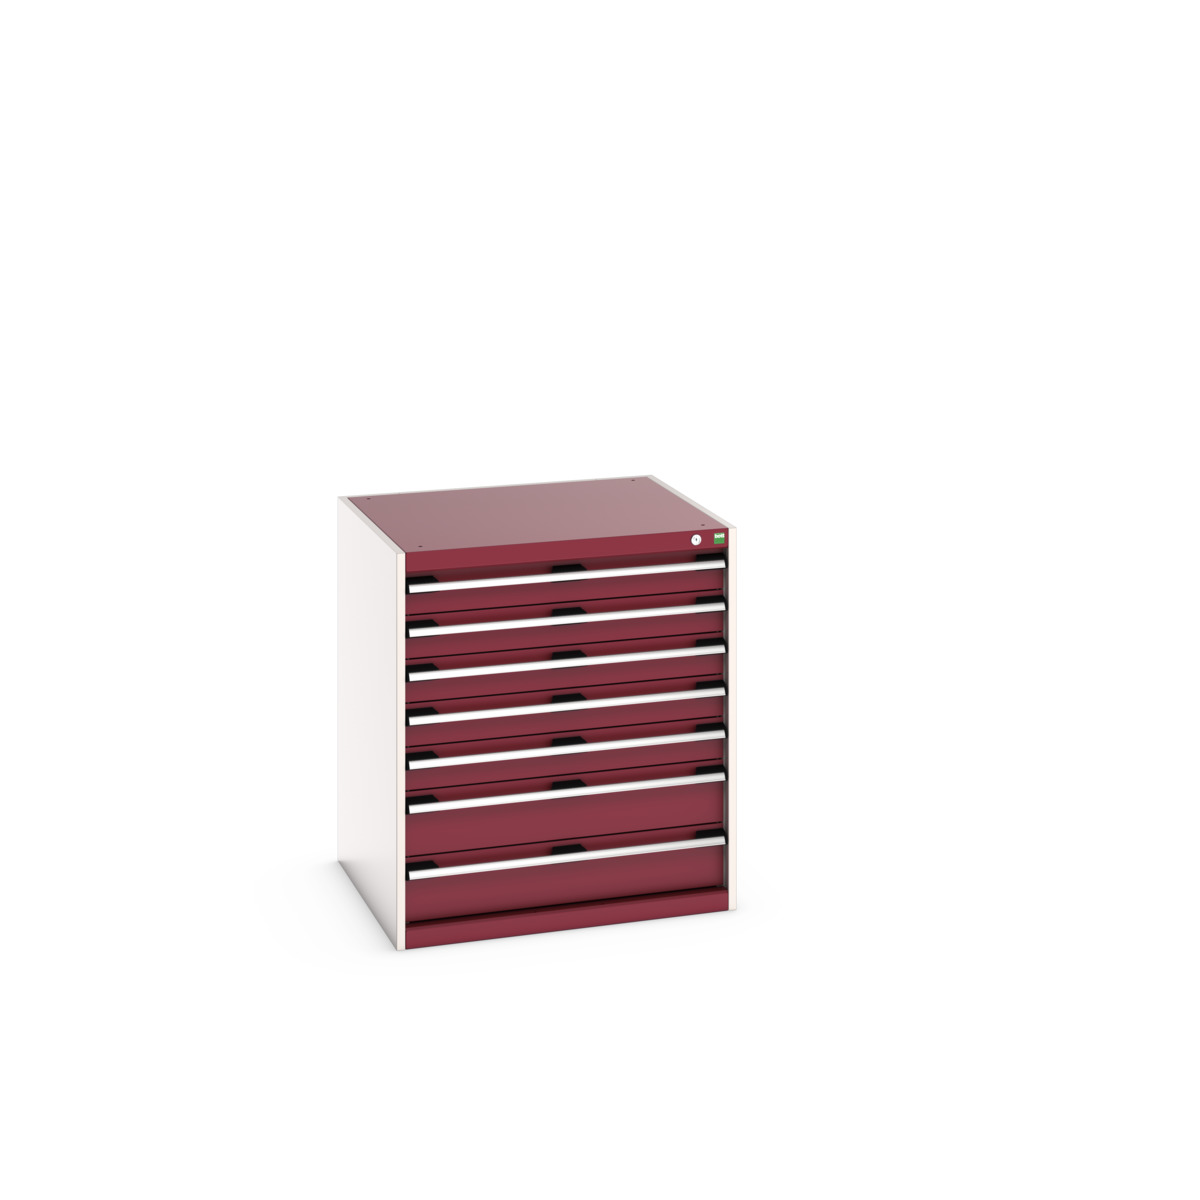 40028108.24V - cubio drawer cabinet